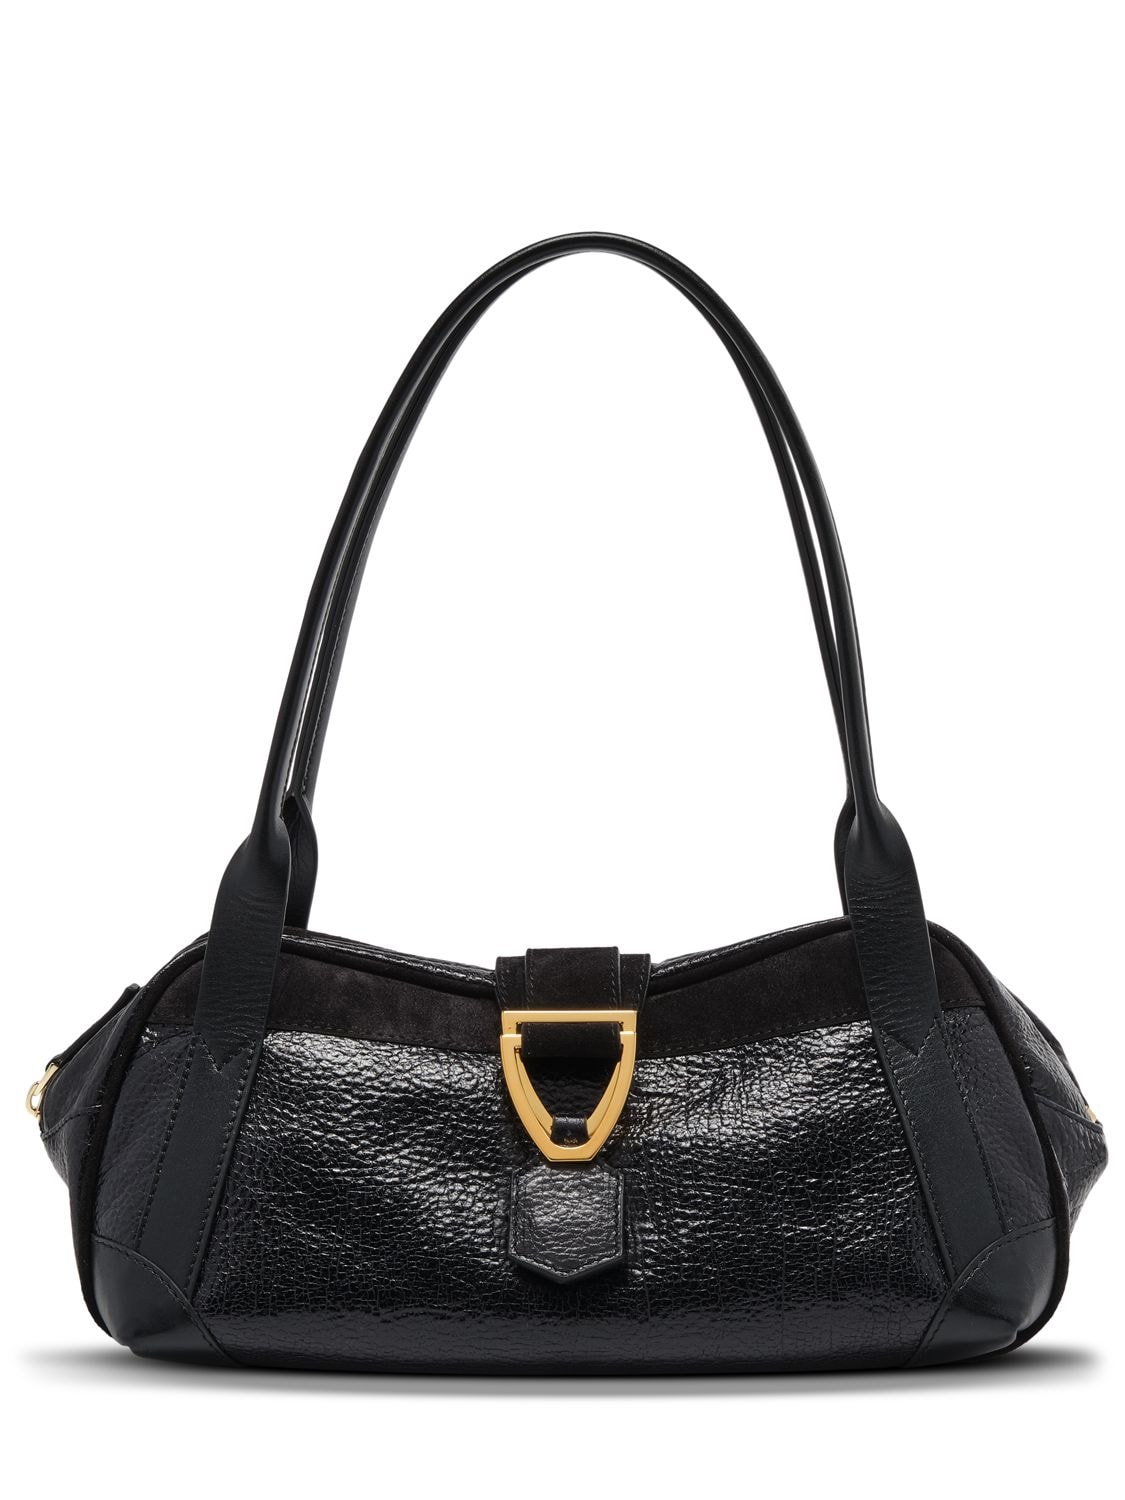 Manu Atelier Caique Suede & Leather Shoulder Bag In Black